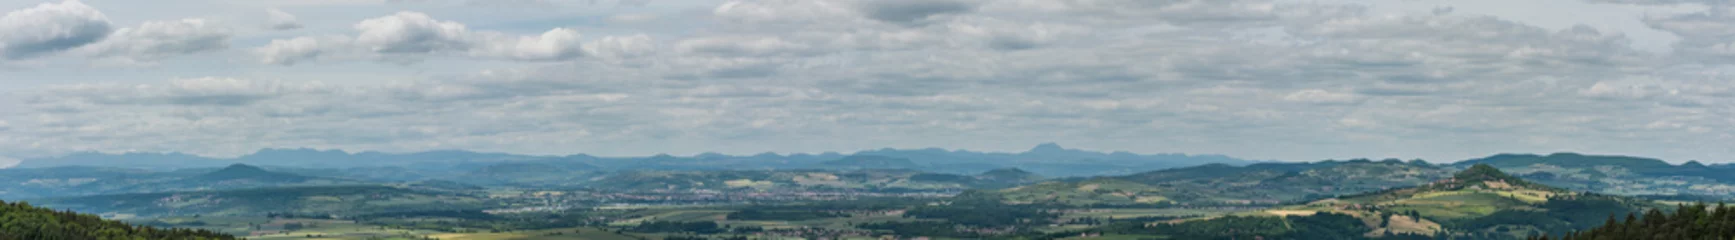 Fotobehang vue panoramique des monts d' Auvergne © PL.TH